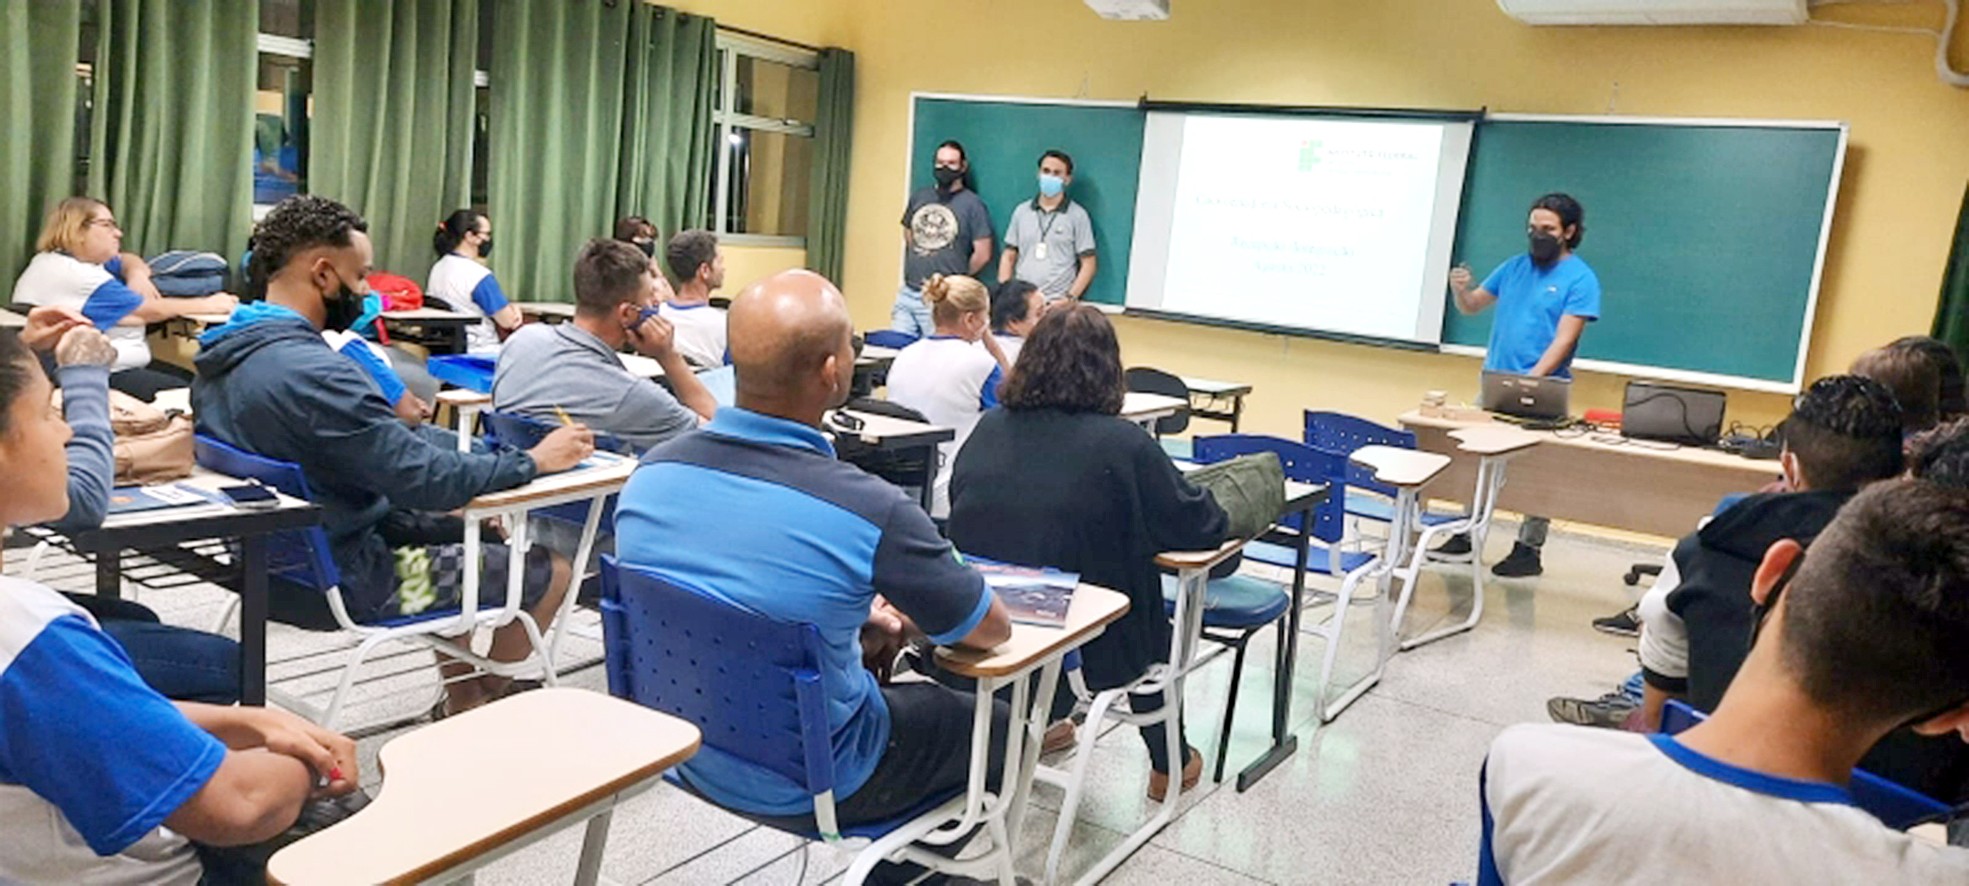 Rodrigo Garcia garante curso técnico integrado ao ensino médio nas escolas de tempo integral